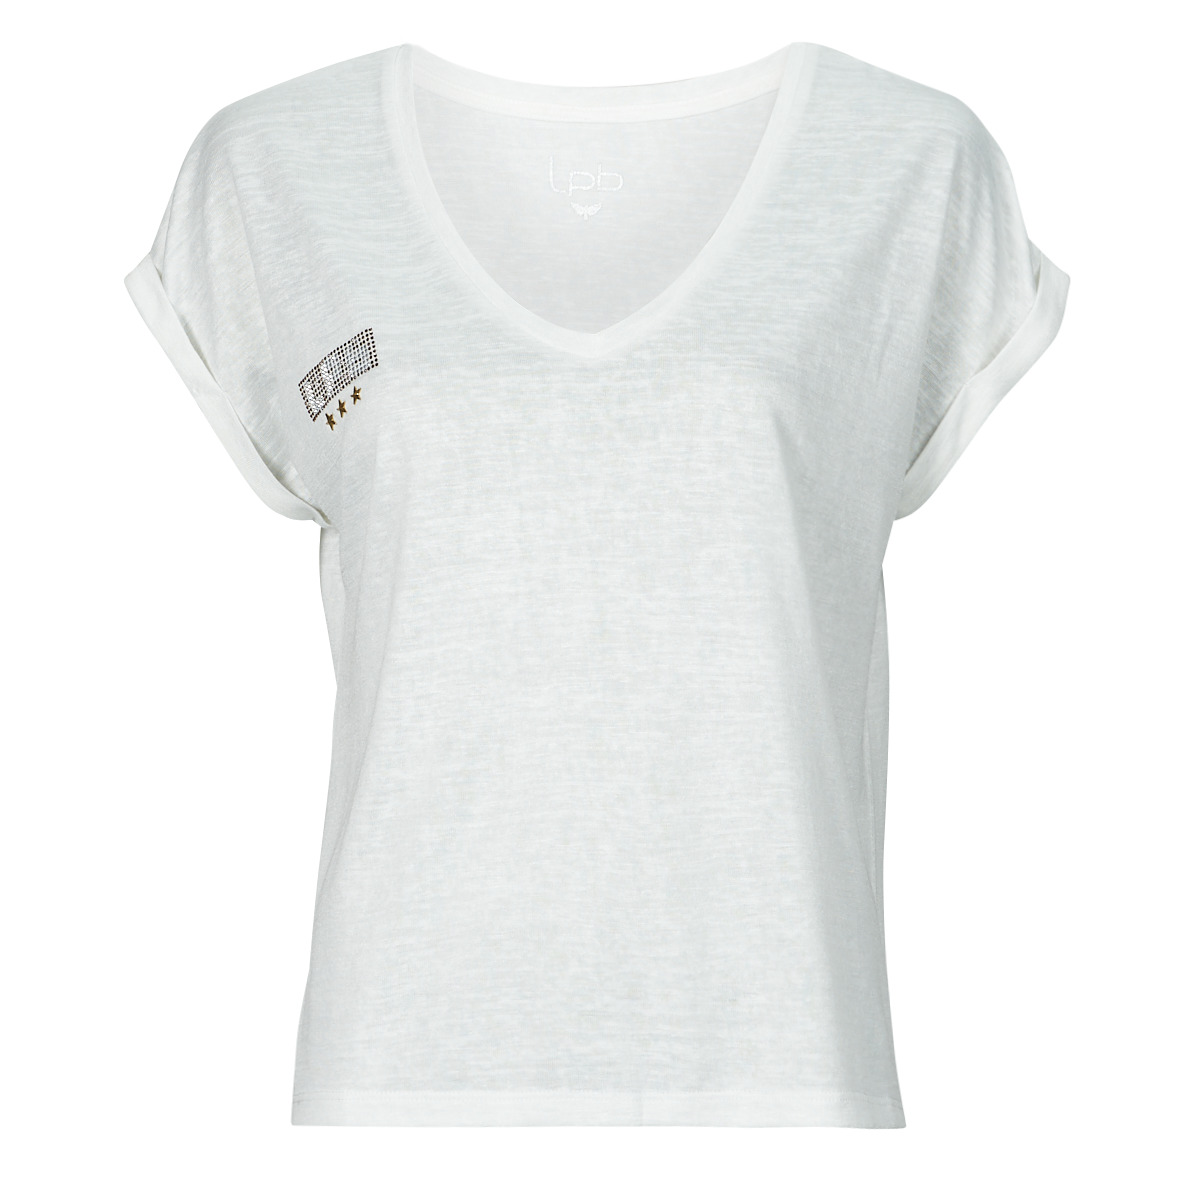 Υφασμάτινα Γυναίκα T-shirt με κοντά μανίκια Les Petites Bombes DERNA Άσπρο